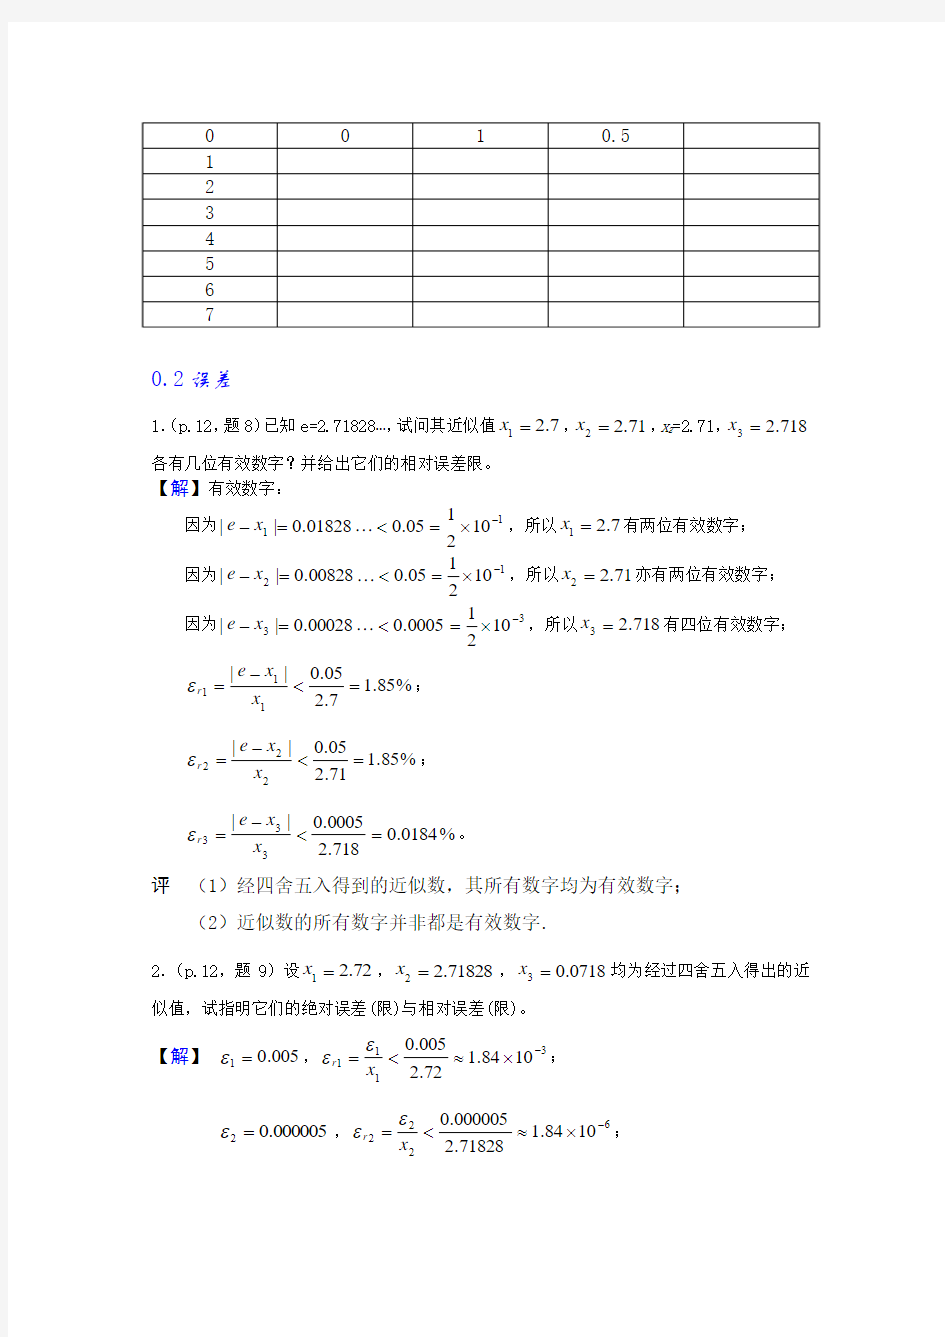 数值分析简明教程第二版(王超能)习题答案24页全解word版